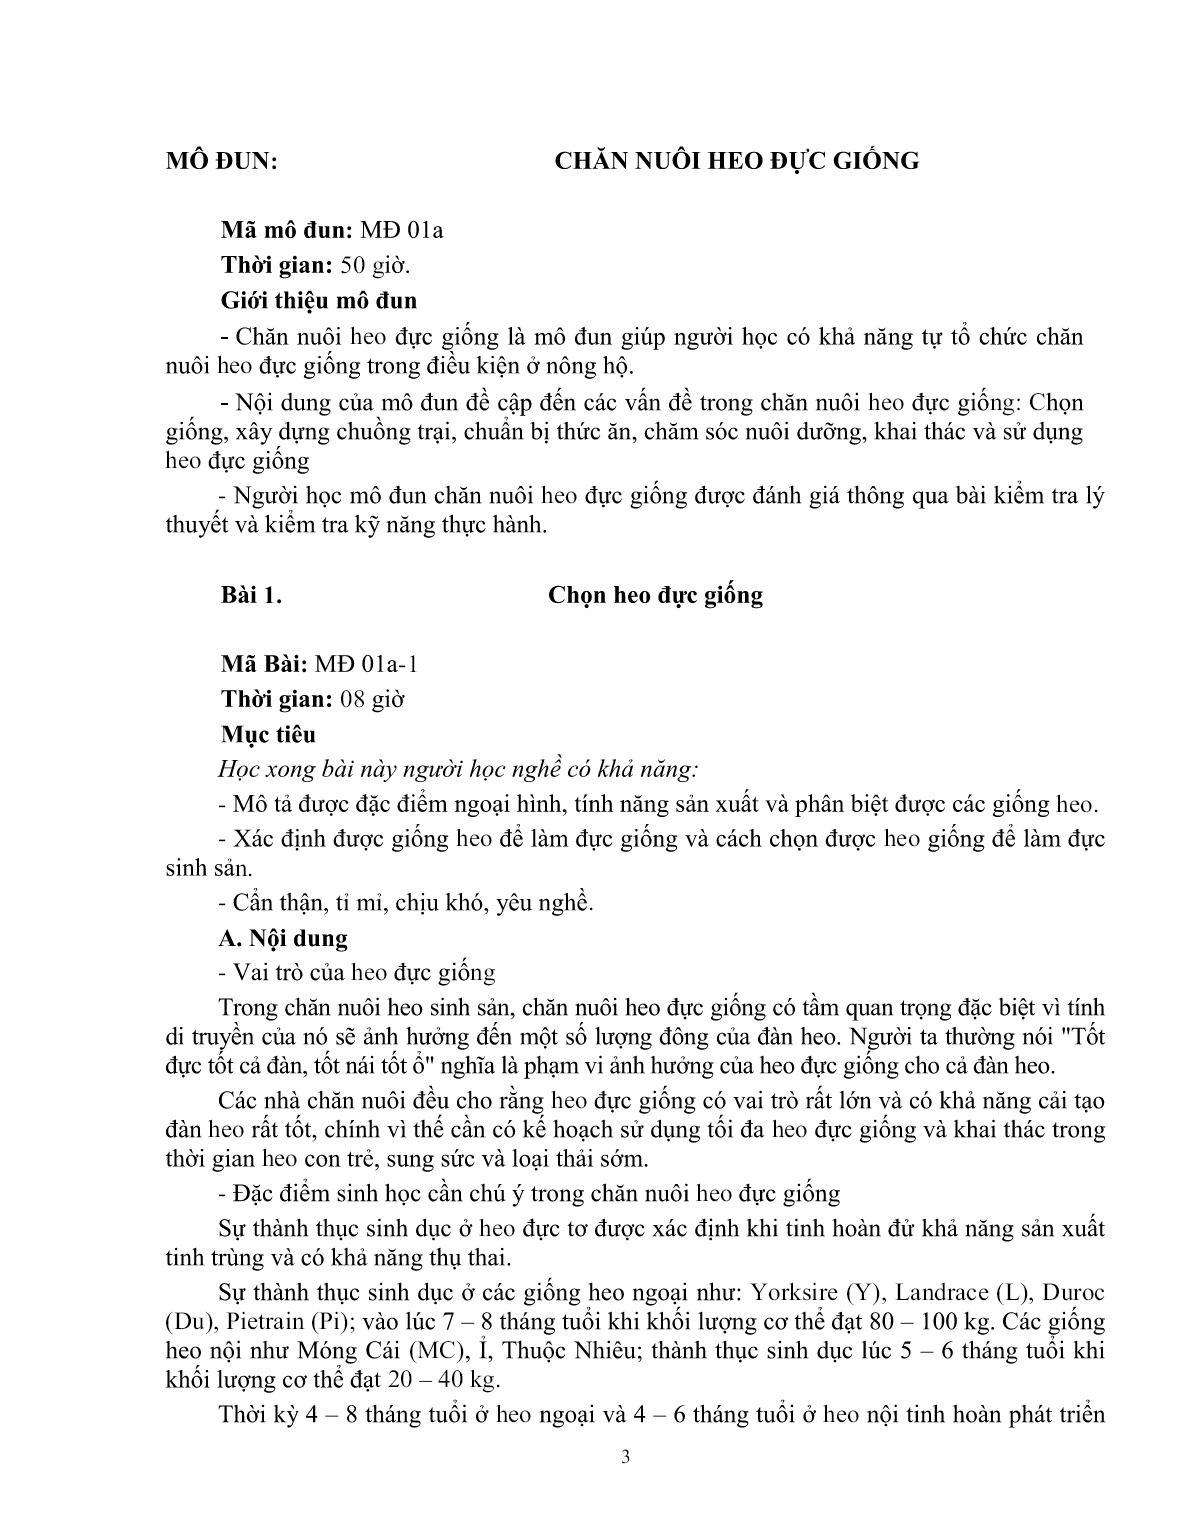 Giáo trình mô đun Chăn nuôi heo đực giống (Trình độ: Đào tạo dưới 3 tháng) trang 4